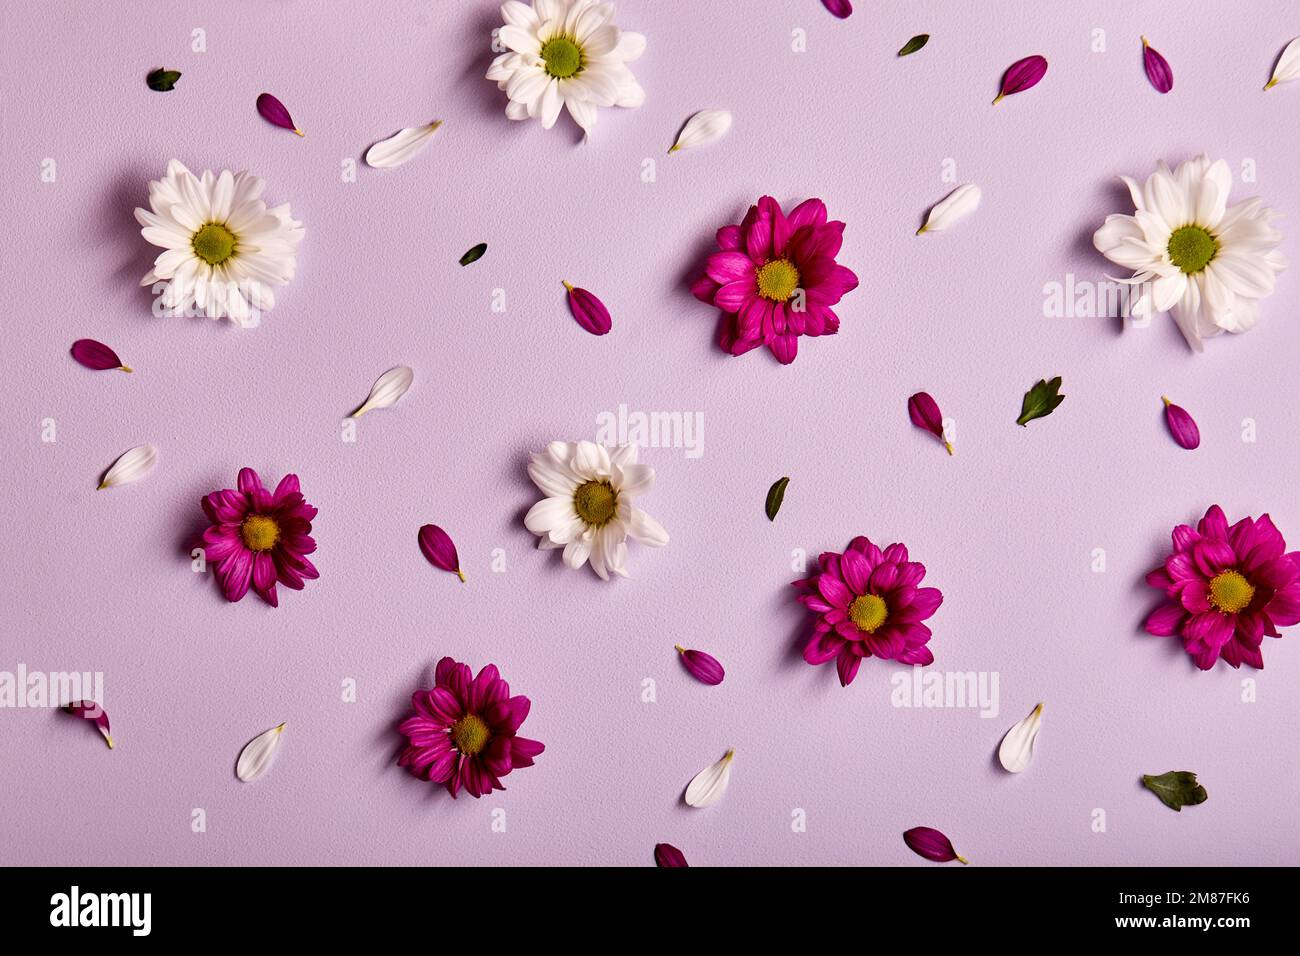 Schöne Blumenzusammensetzung. Chrysanthemen Muster, Frühjahr und Sommer Blumen auf rosa Hintergrund. Flach liegend, Draufsicht, Kopierraum. Blüte, Flora Co Stockfoto